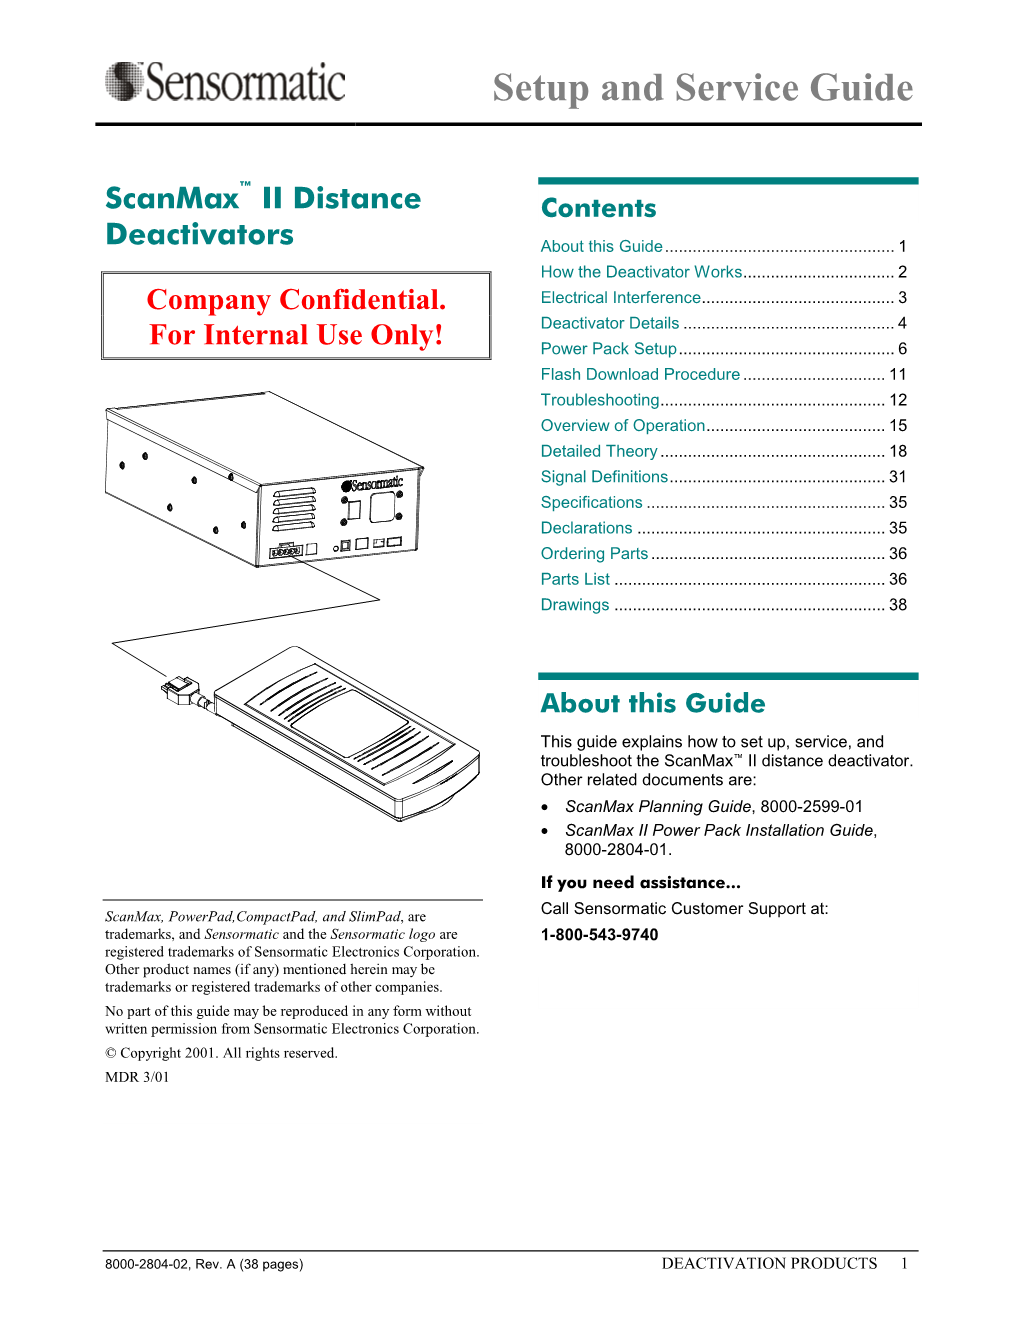 Scanmax II Distance Deactivators Setup/Service Guide